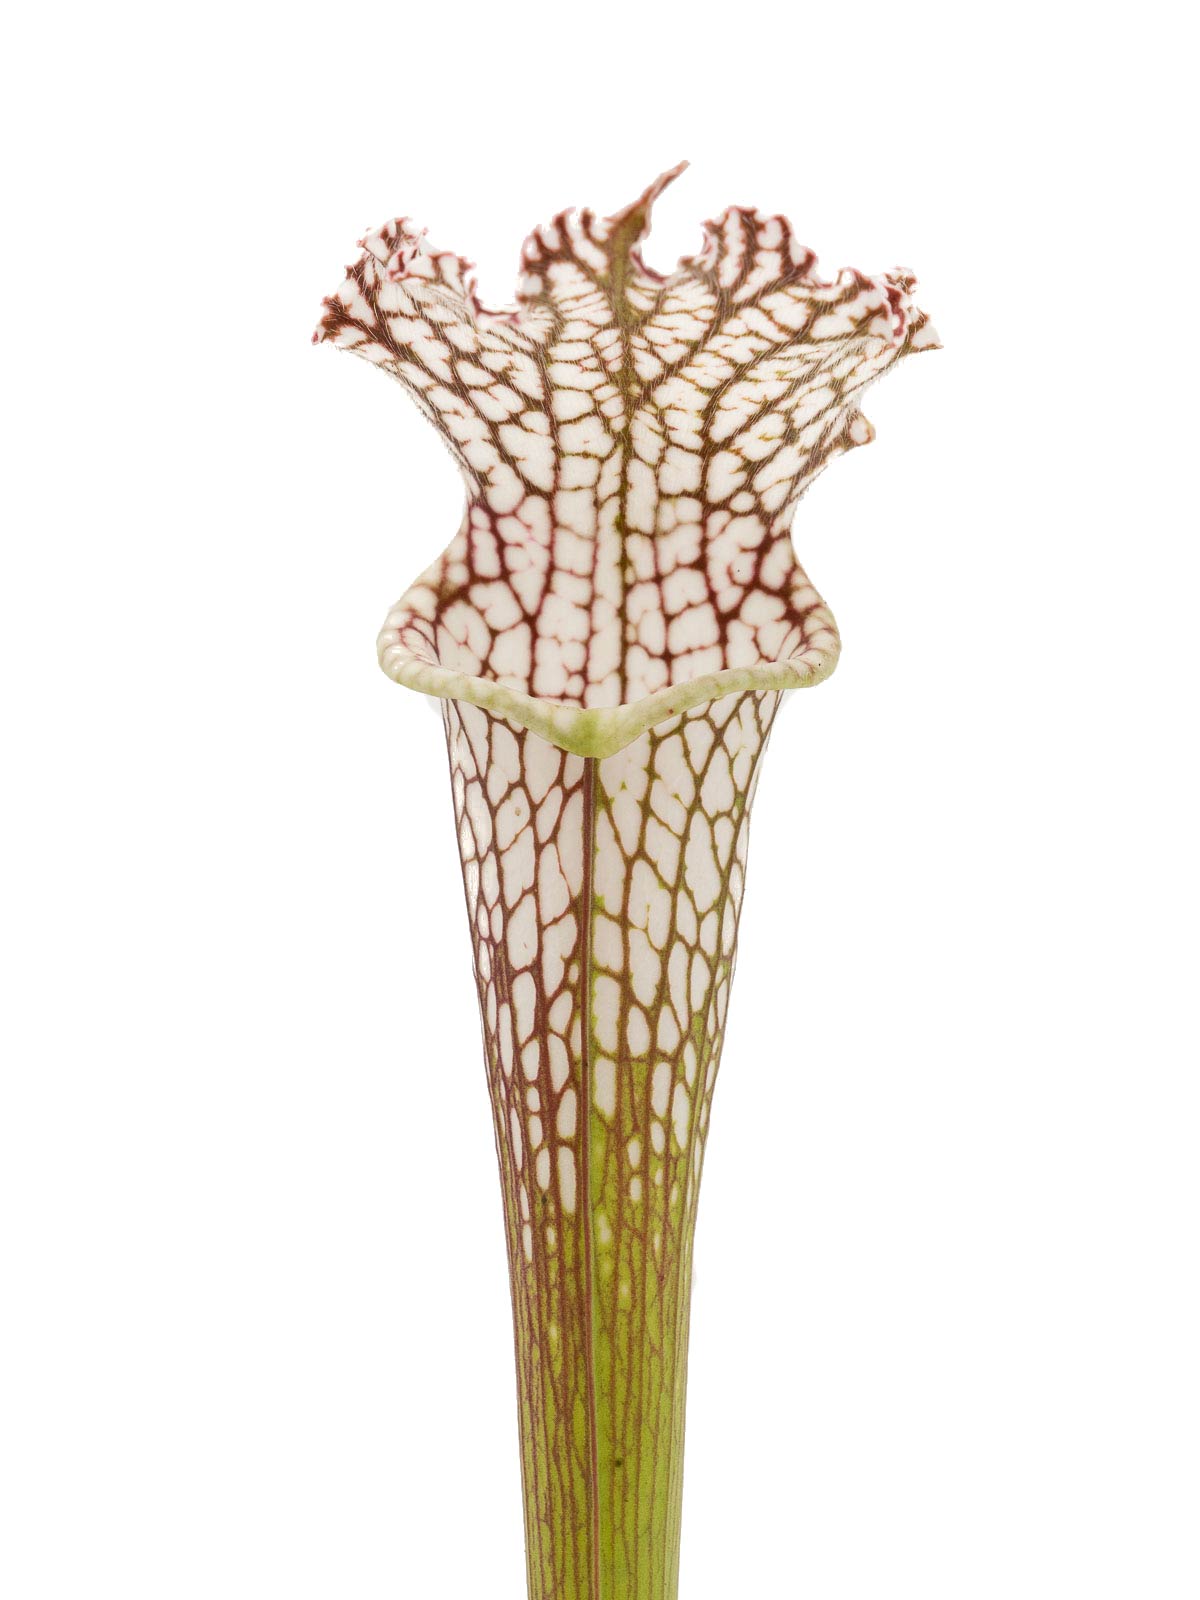 Sarracenia leucophylla - MK L06, Perdido, Baldwin County, Alabama